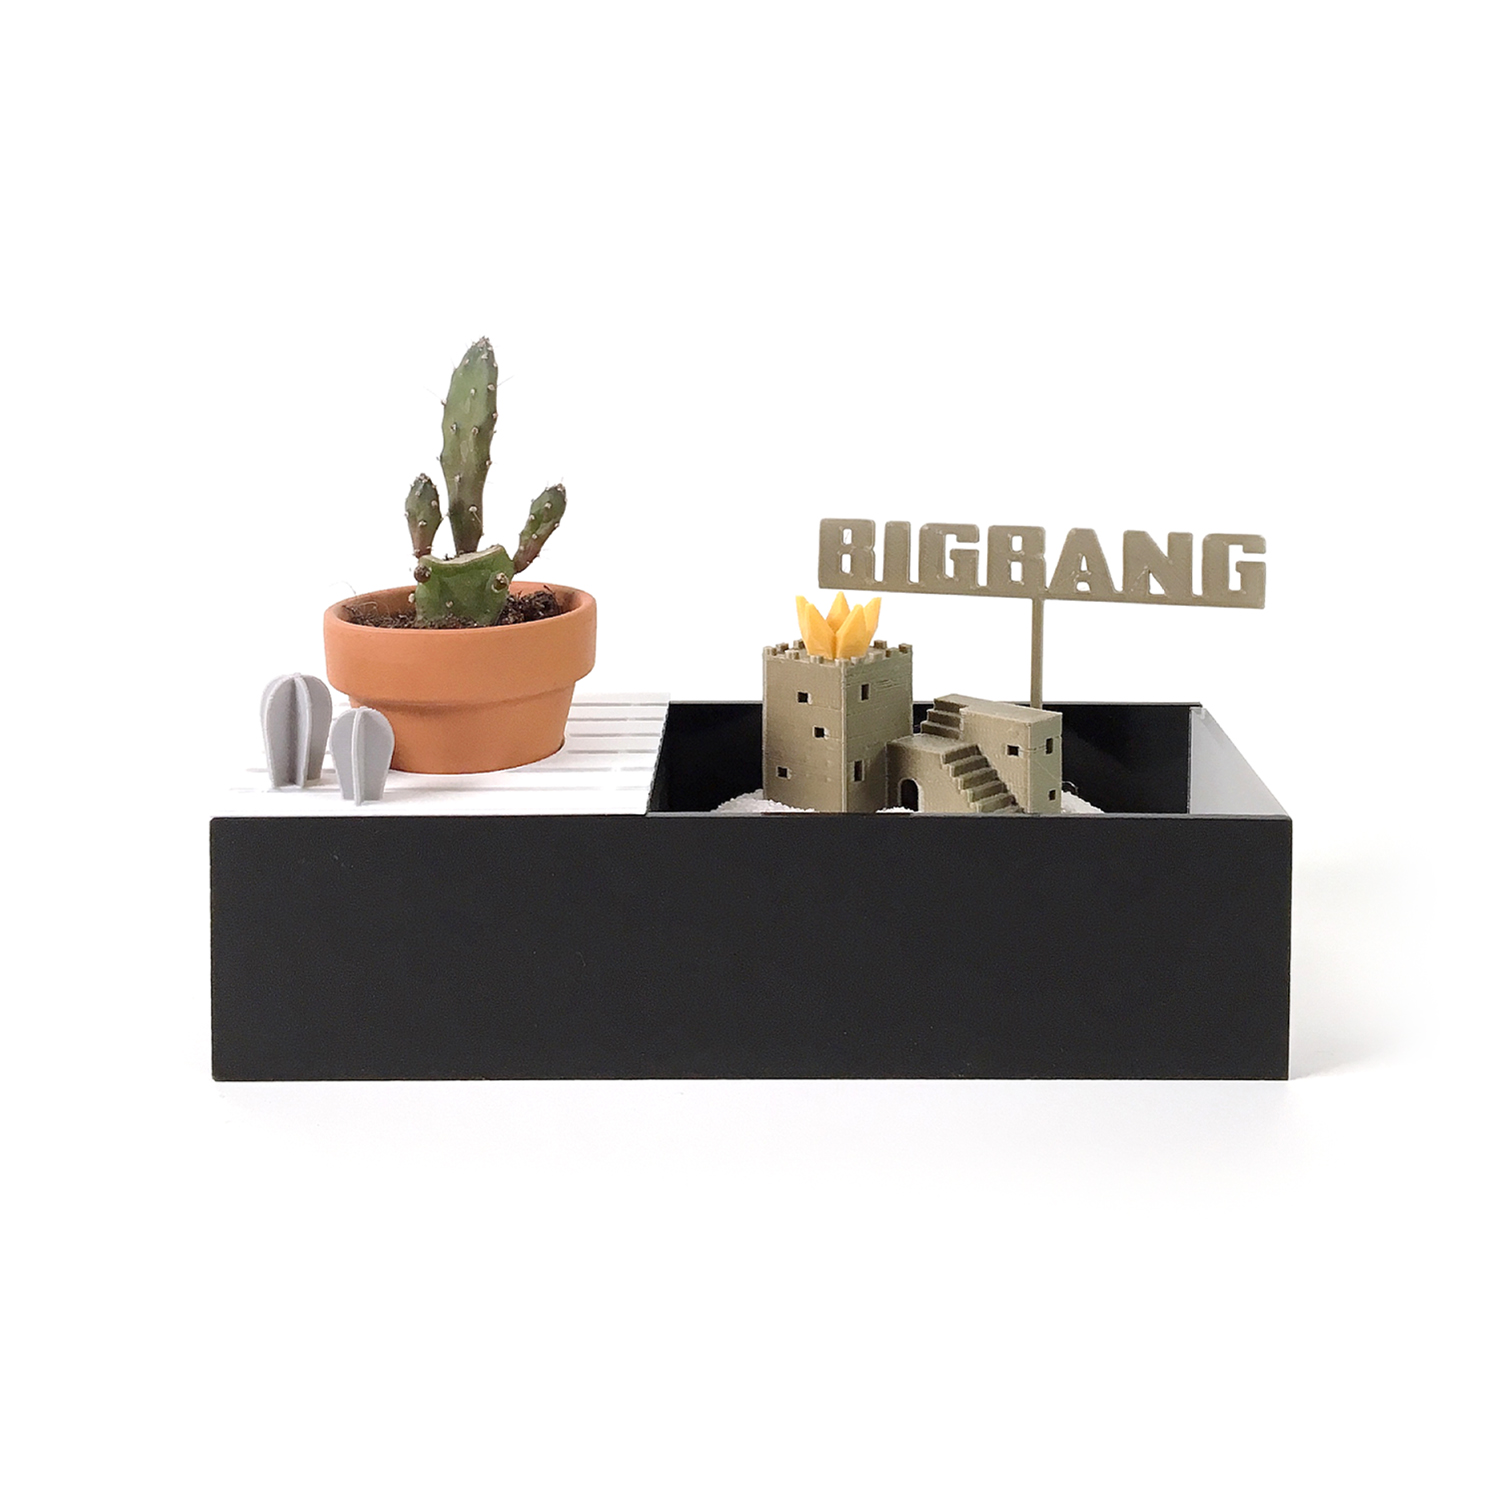 [LIVESLOW] BIGBANG PLANTS KIT with jammm YG SELECT